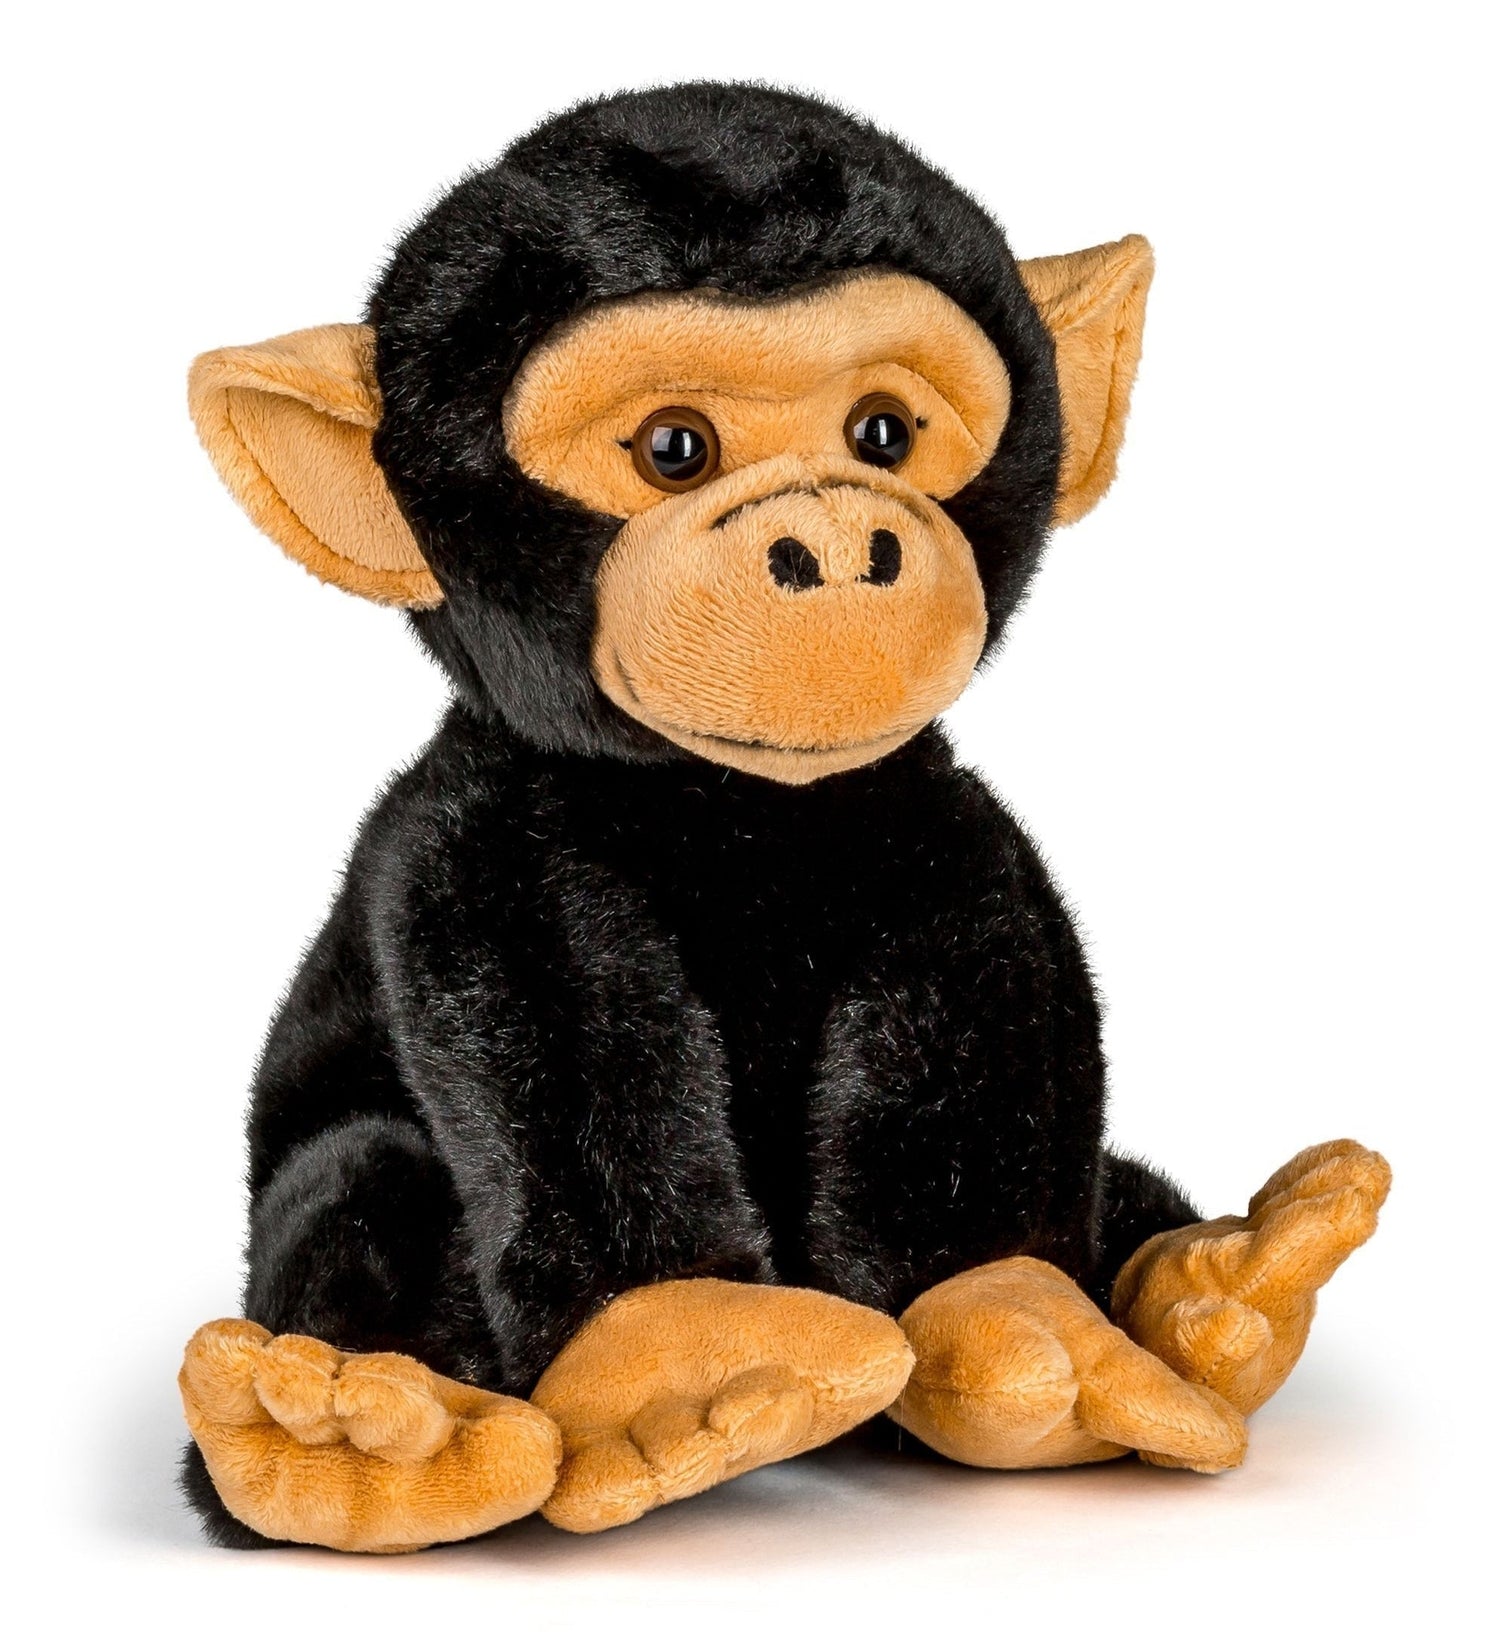 Stuffed Animal - Chimpanzee